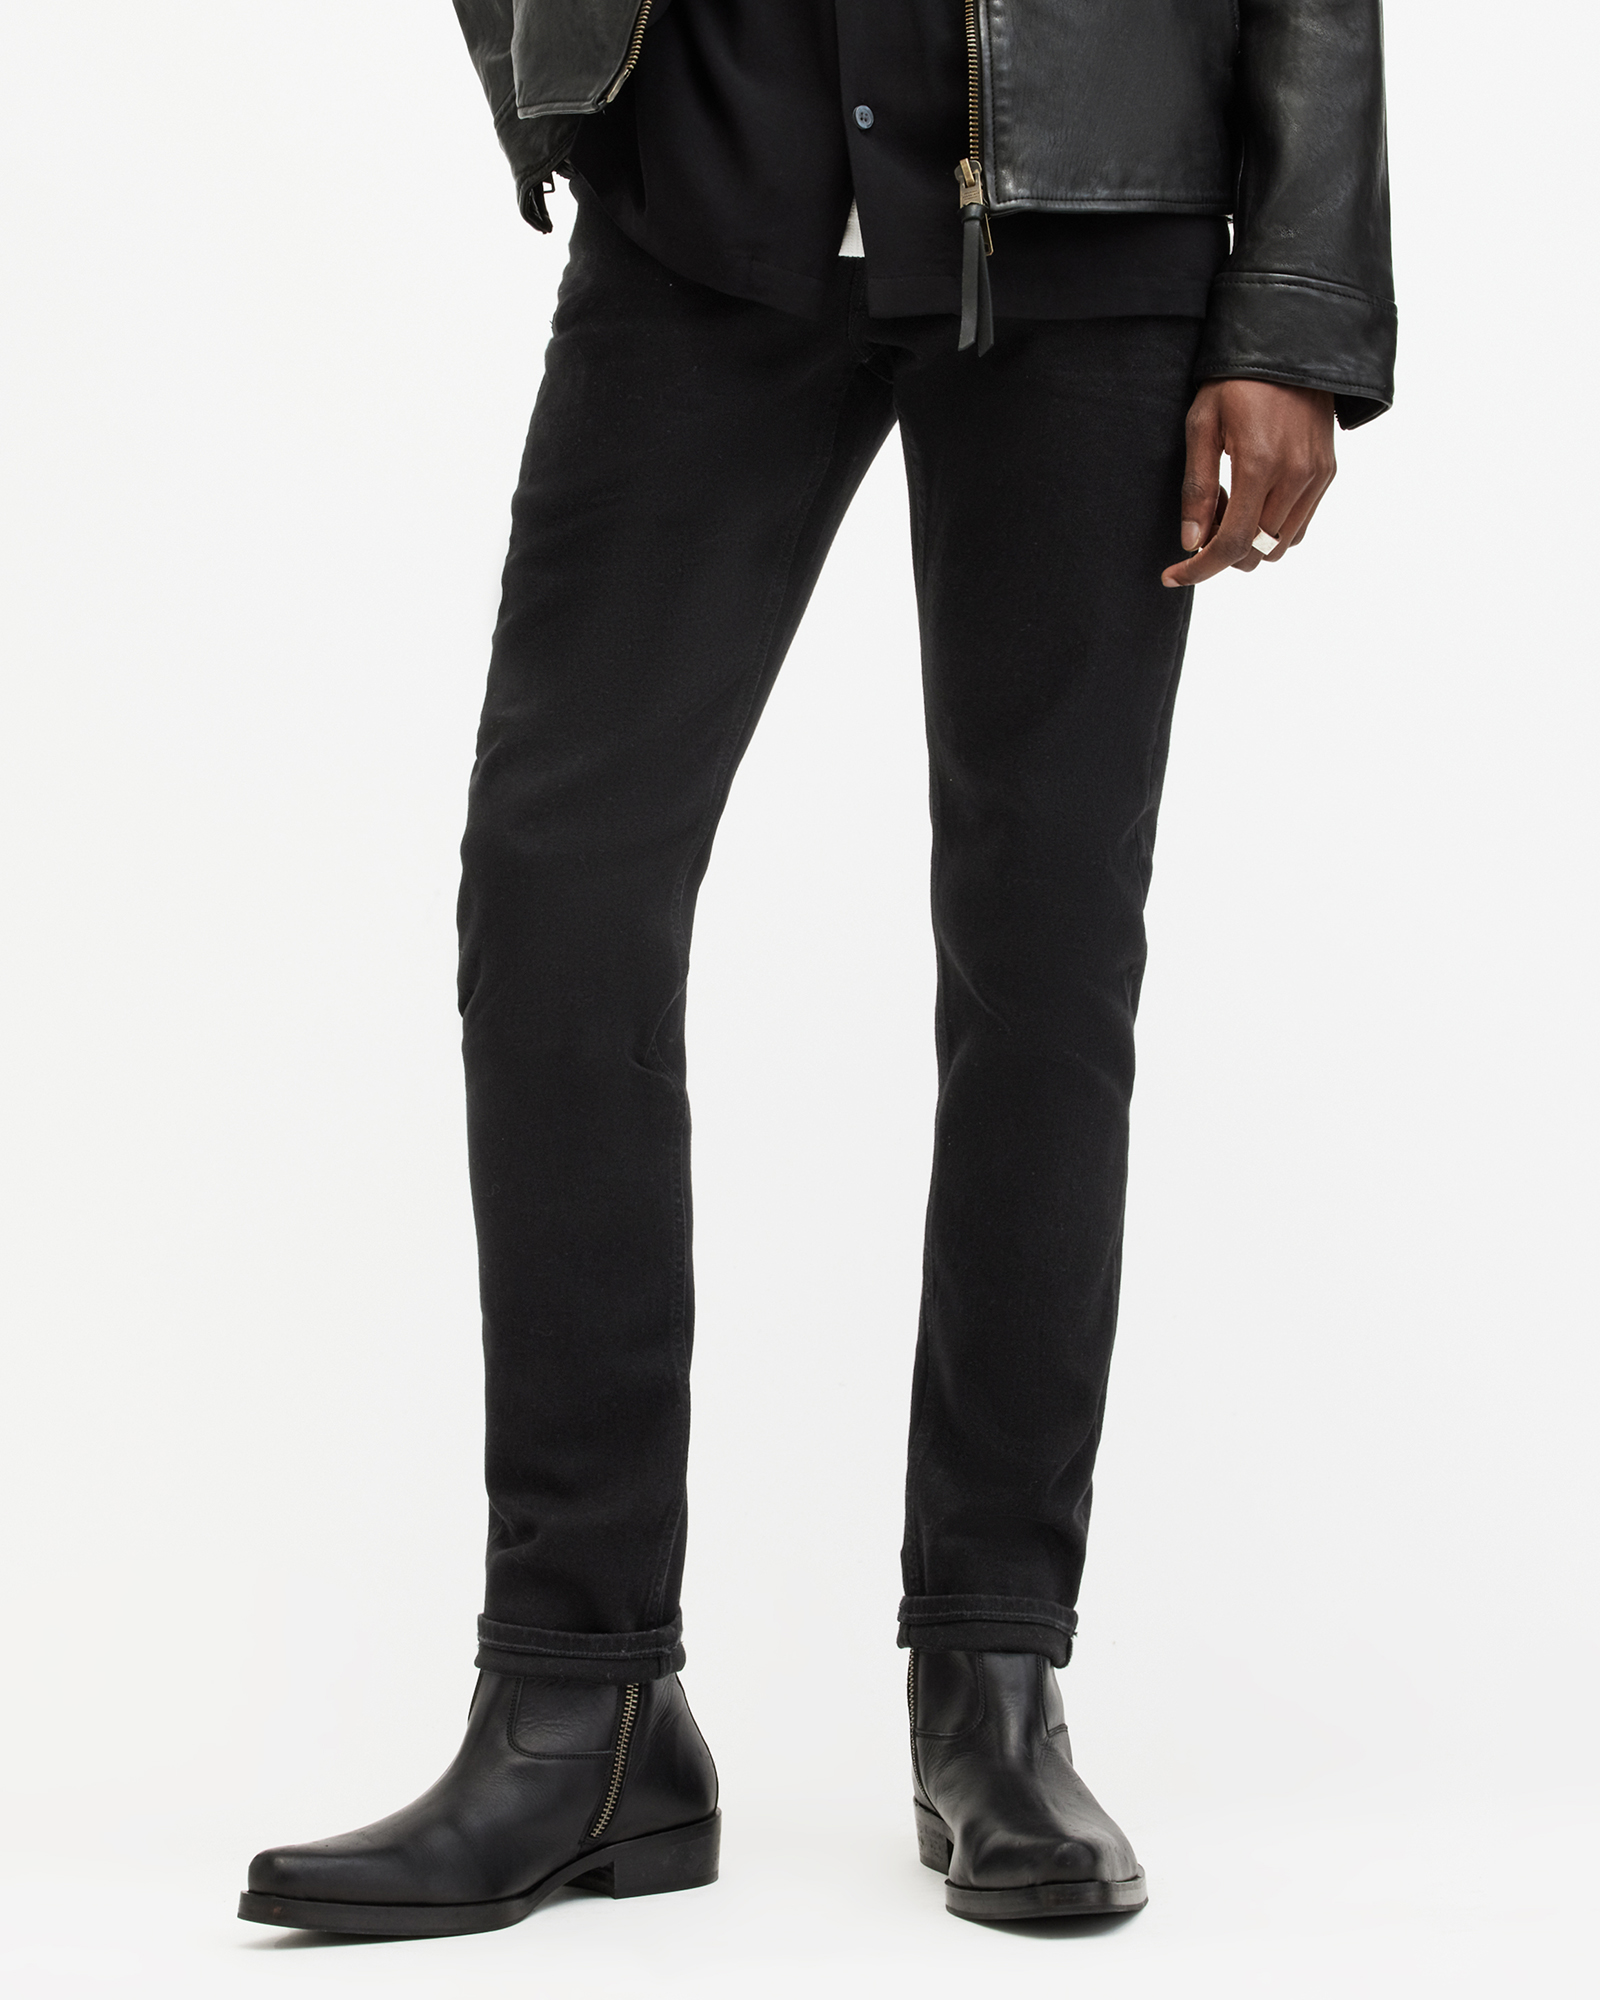 AllSaints Men's Cotton Traditional Rex Slim Jeans, Black, Size: 28/L32